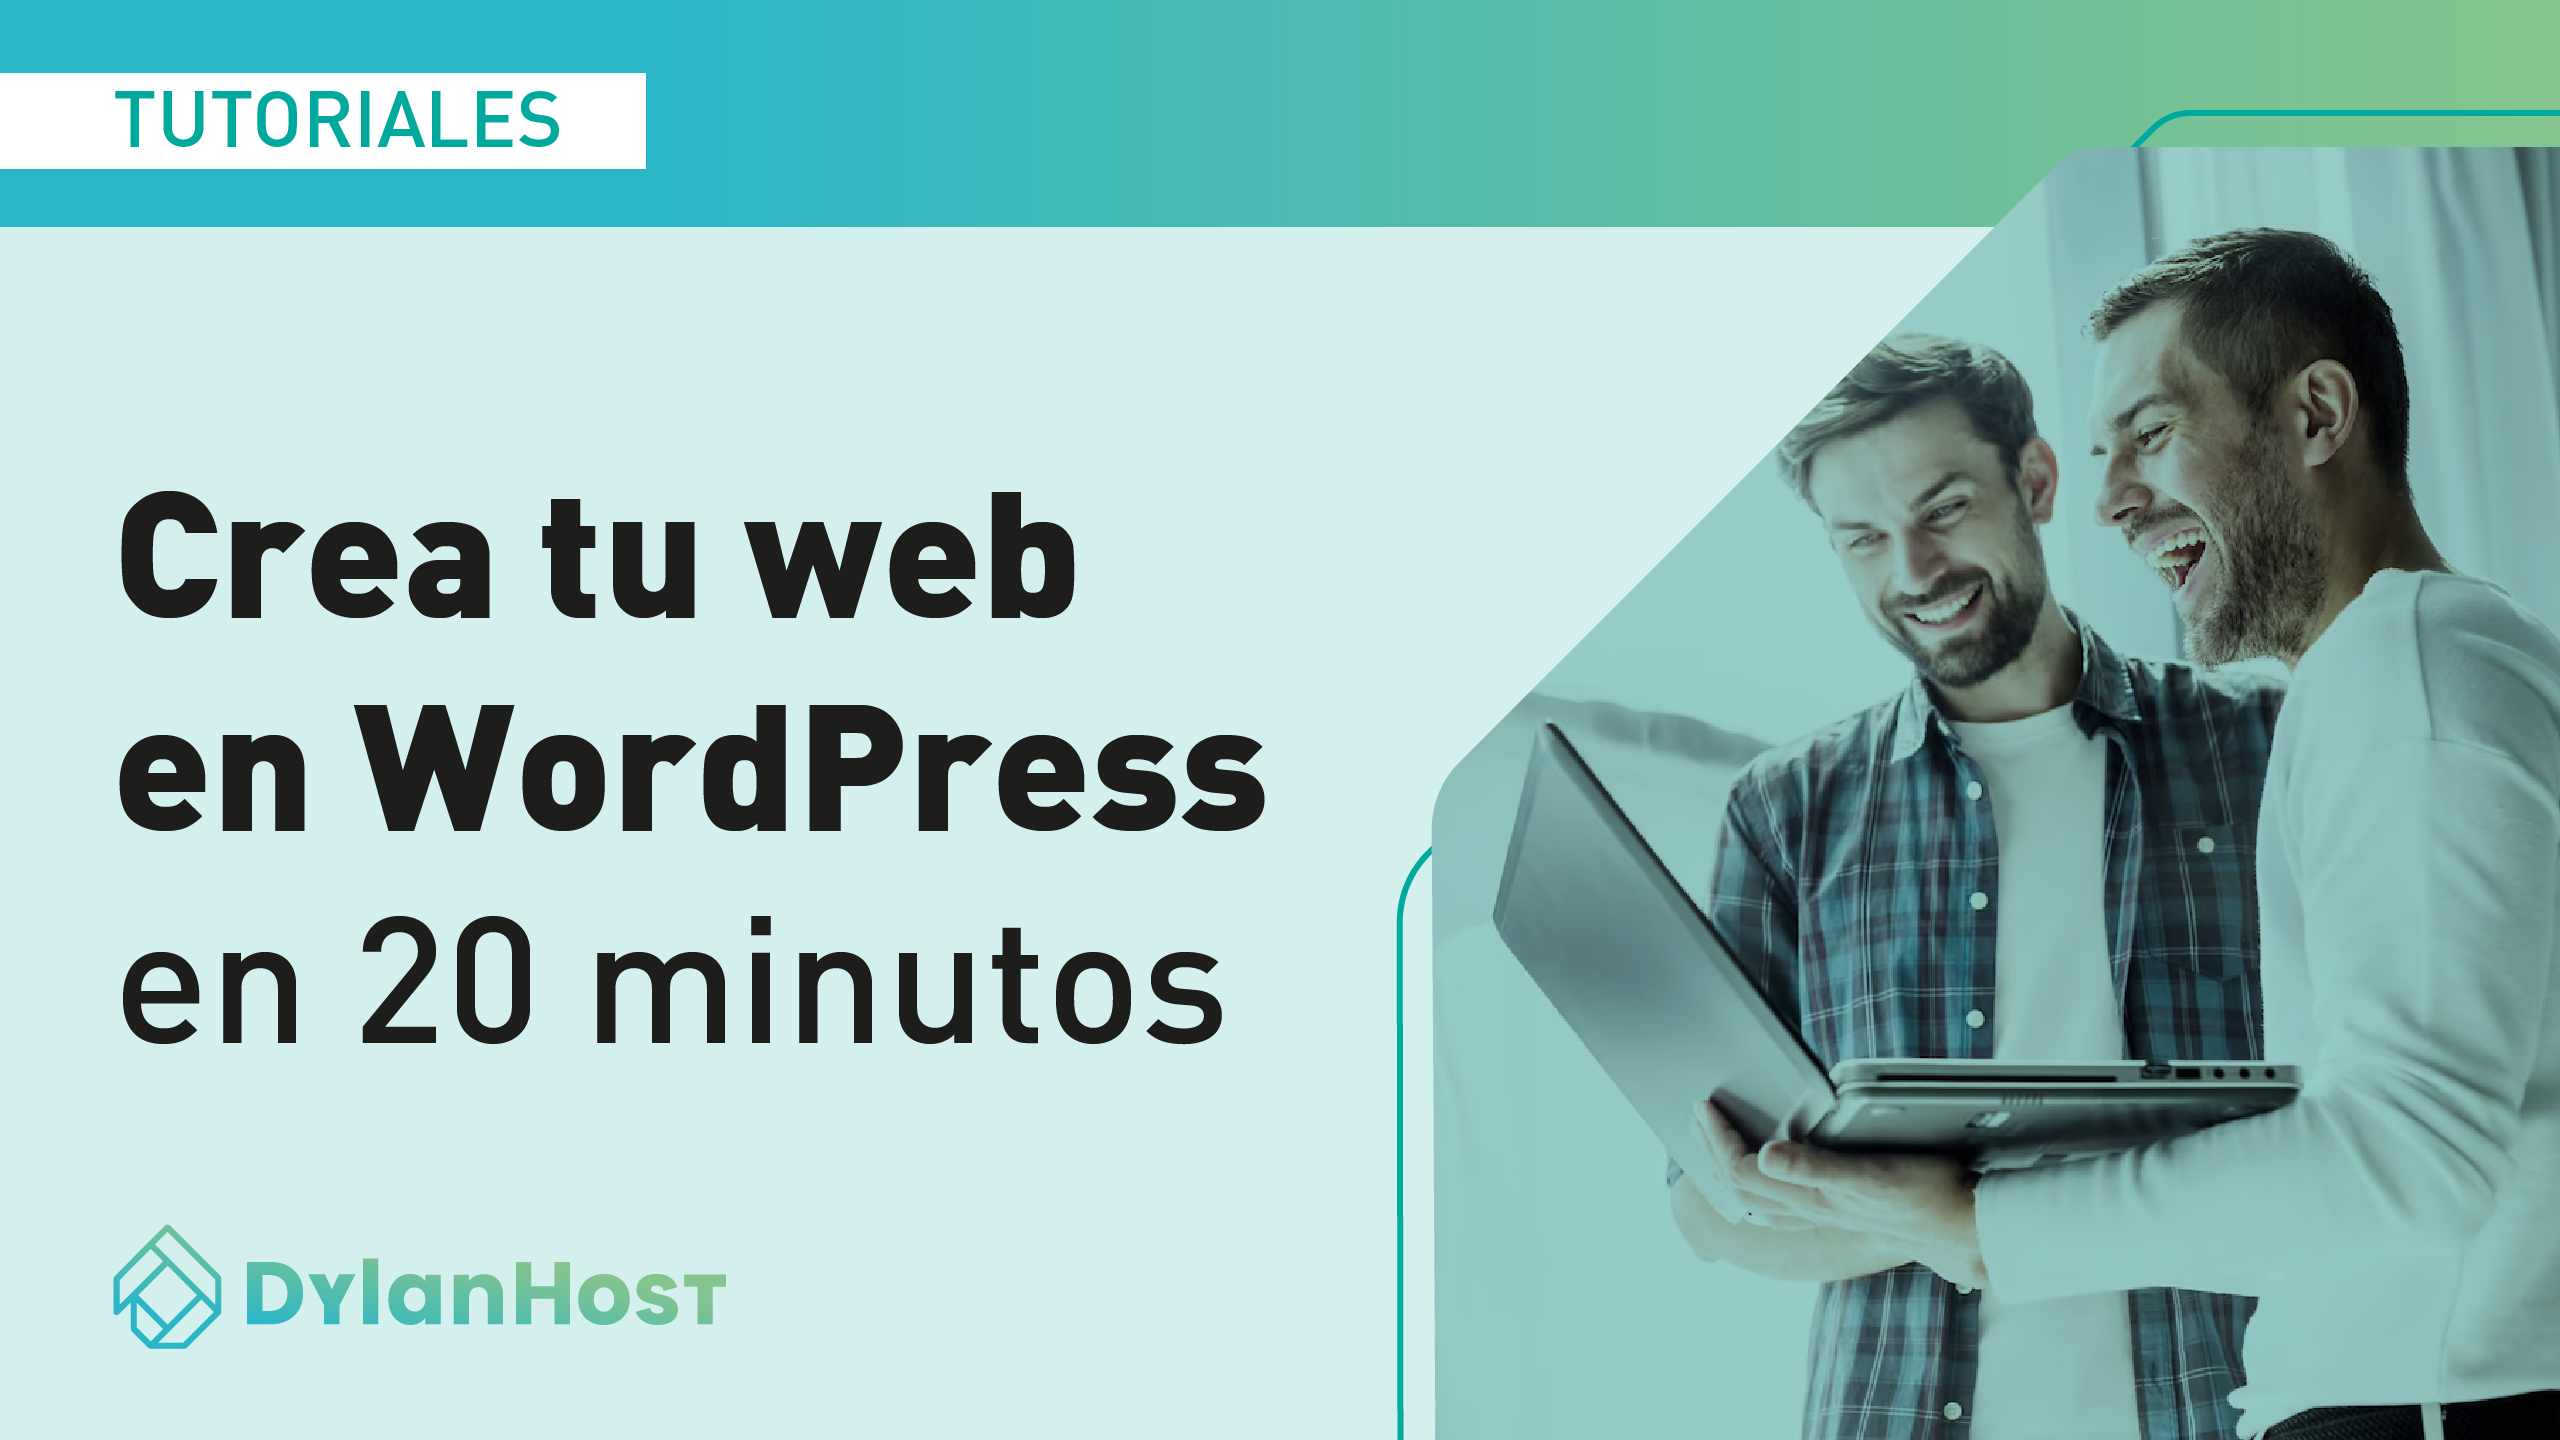 Diseña tu web con WordPress en pocos minutos (con tips)